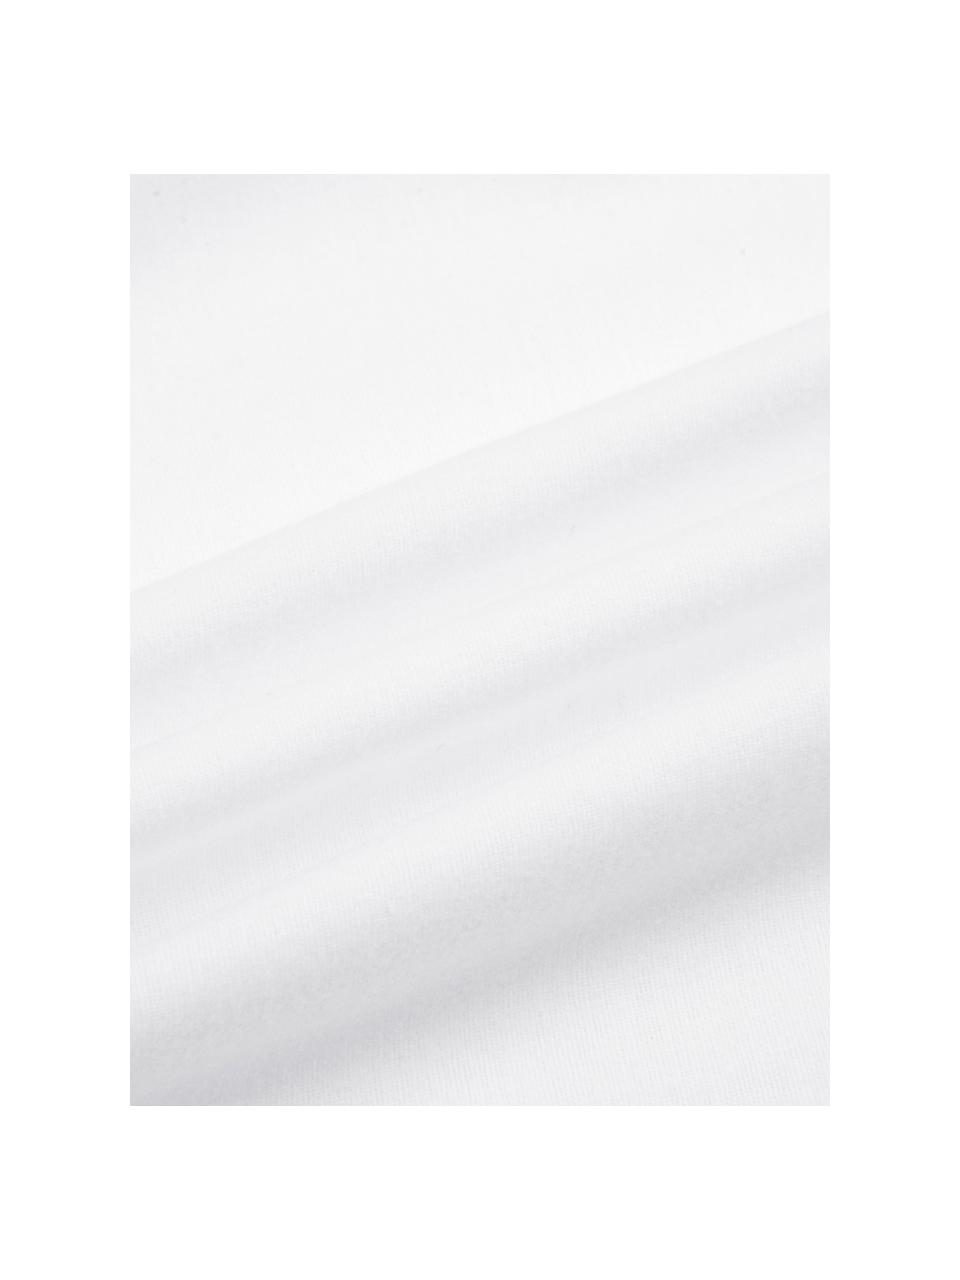 Flanelové povlečení Biba, Bílá, 140 x 200 cm + 1 polštář 80 x 80 cm